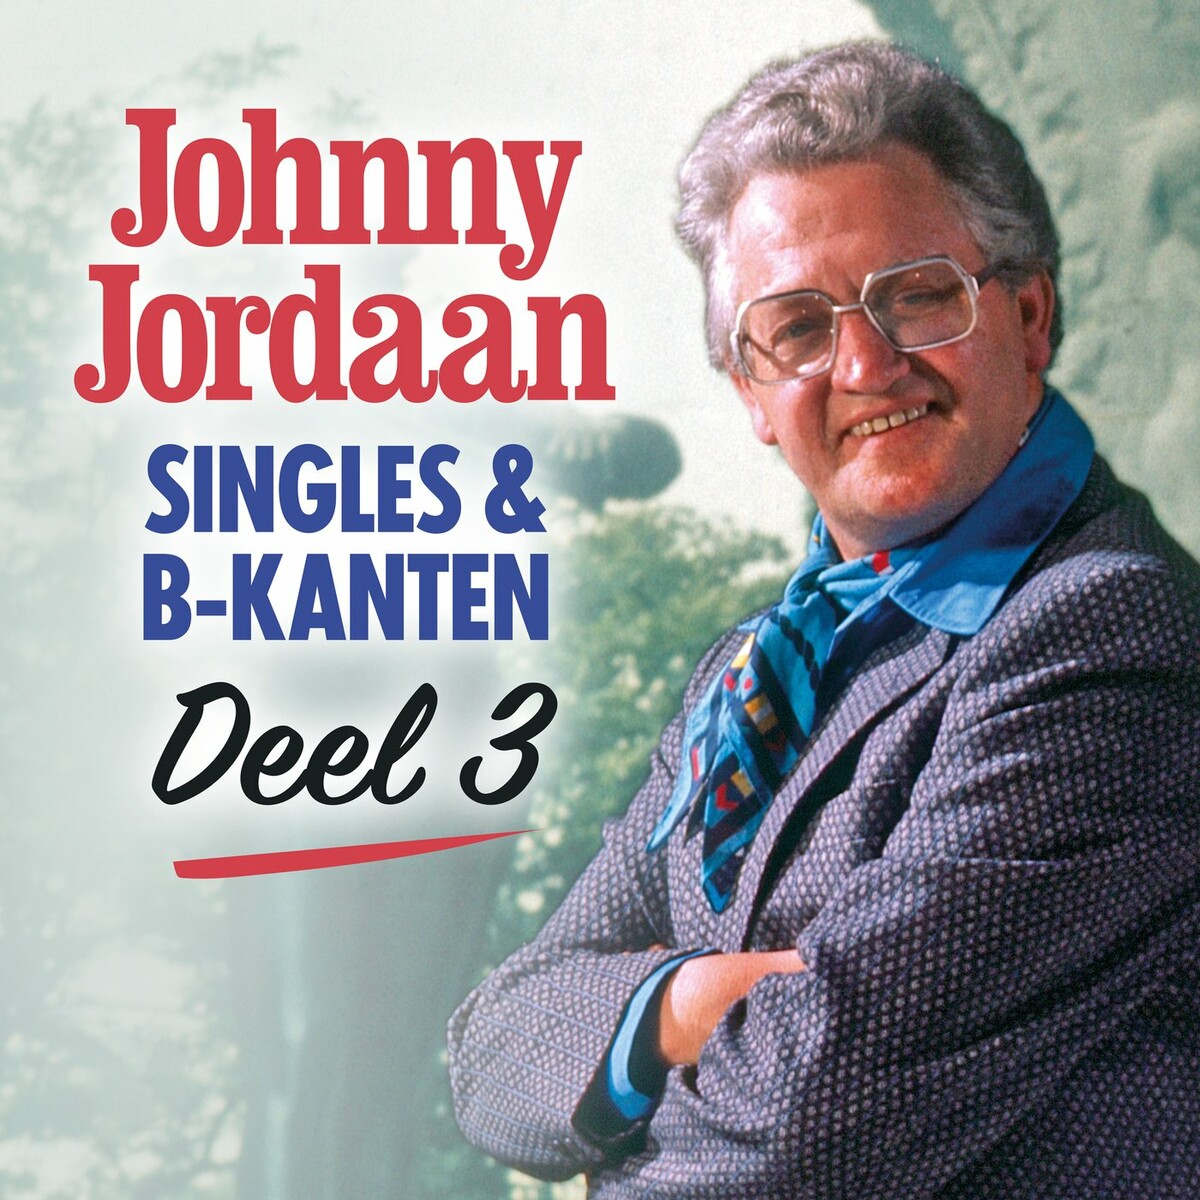 Johnny Jordaan - Singles & B-kanten (Deel 3) (2022)